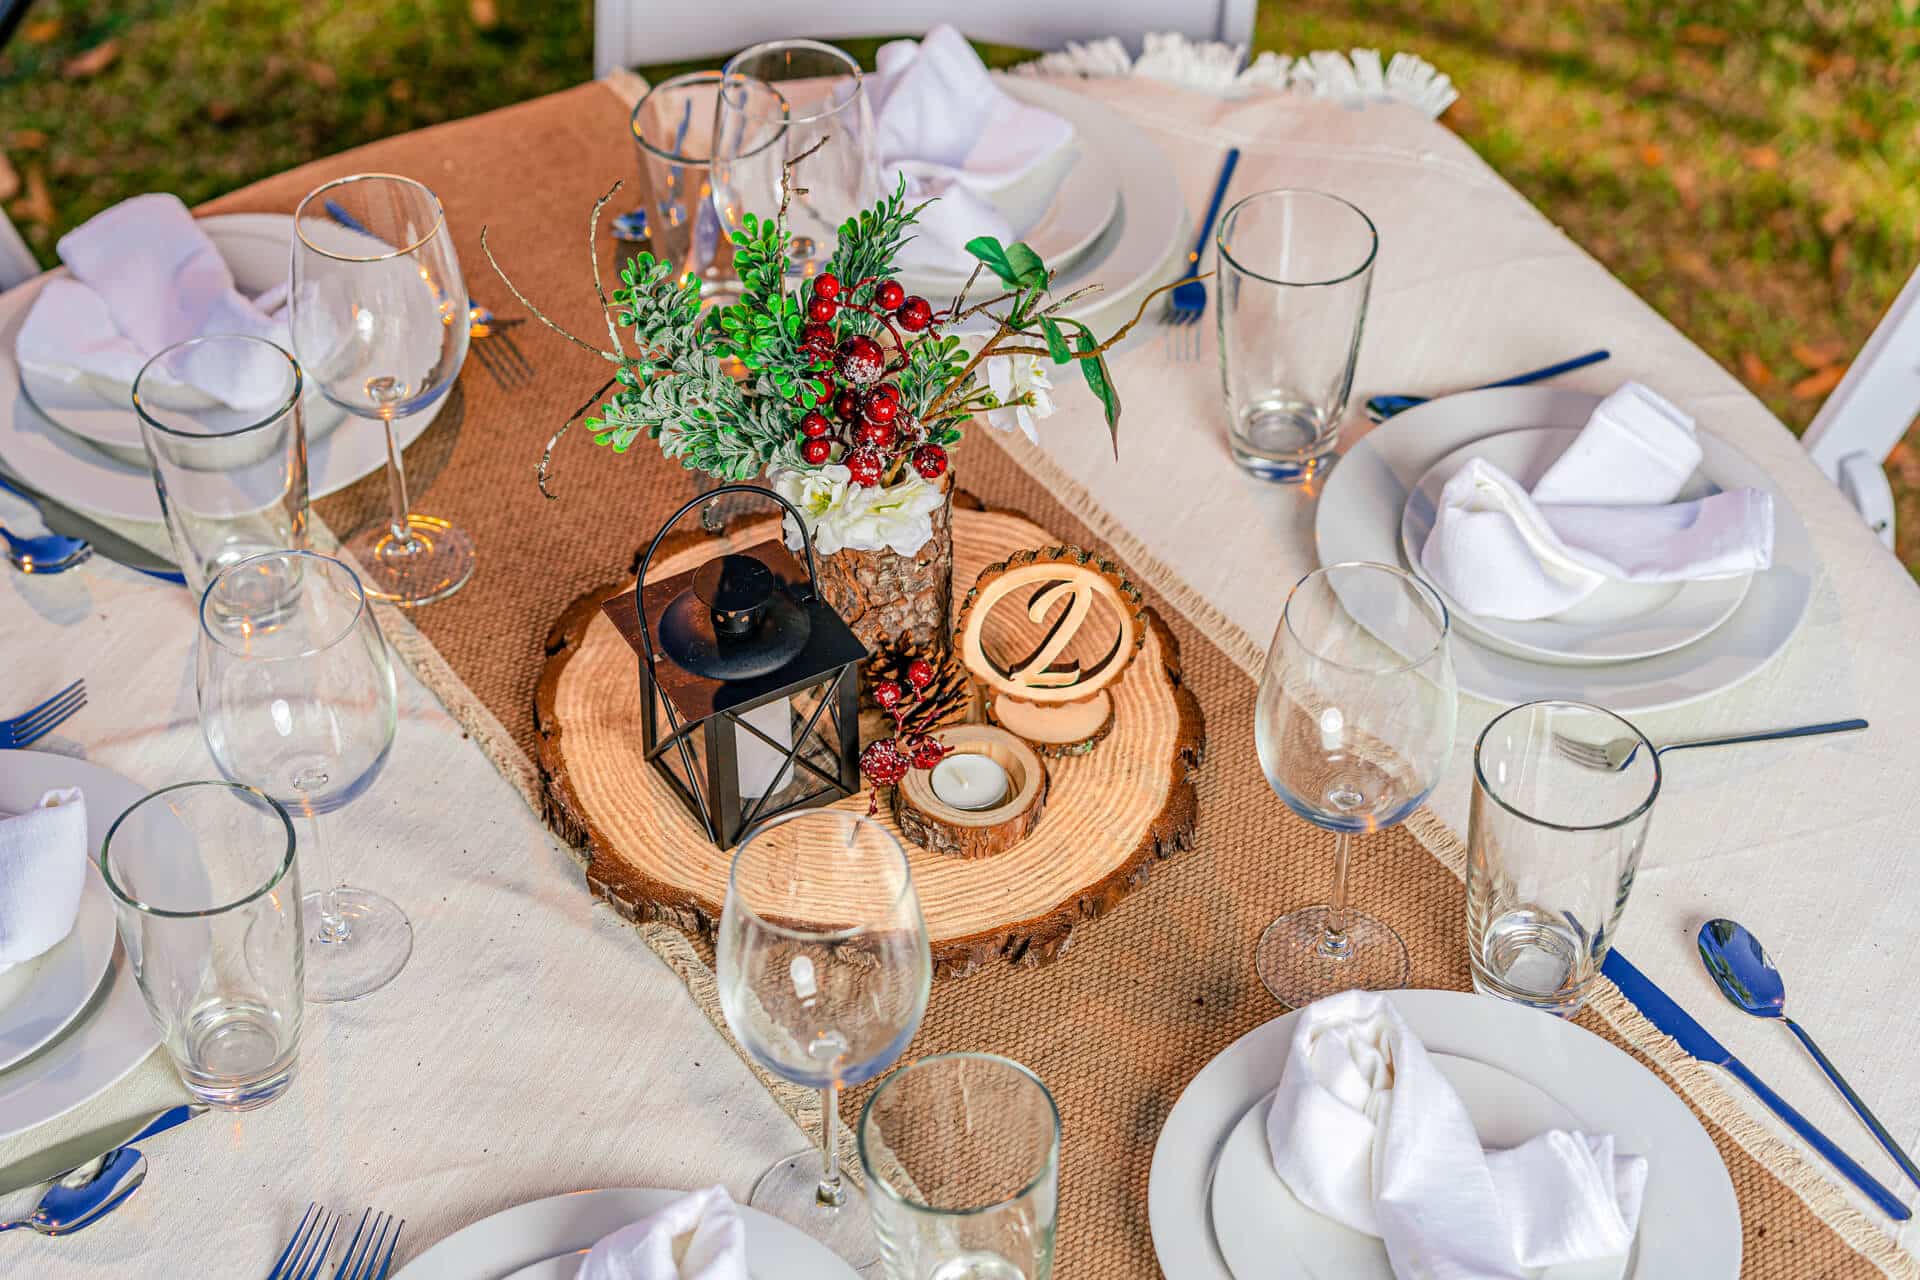 13 Best Wood slice centerpiece ideas  wedding centerpieces, wedding table,  rustic wedding